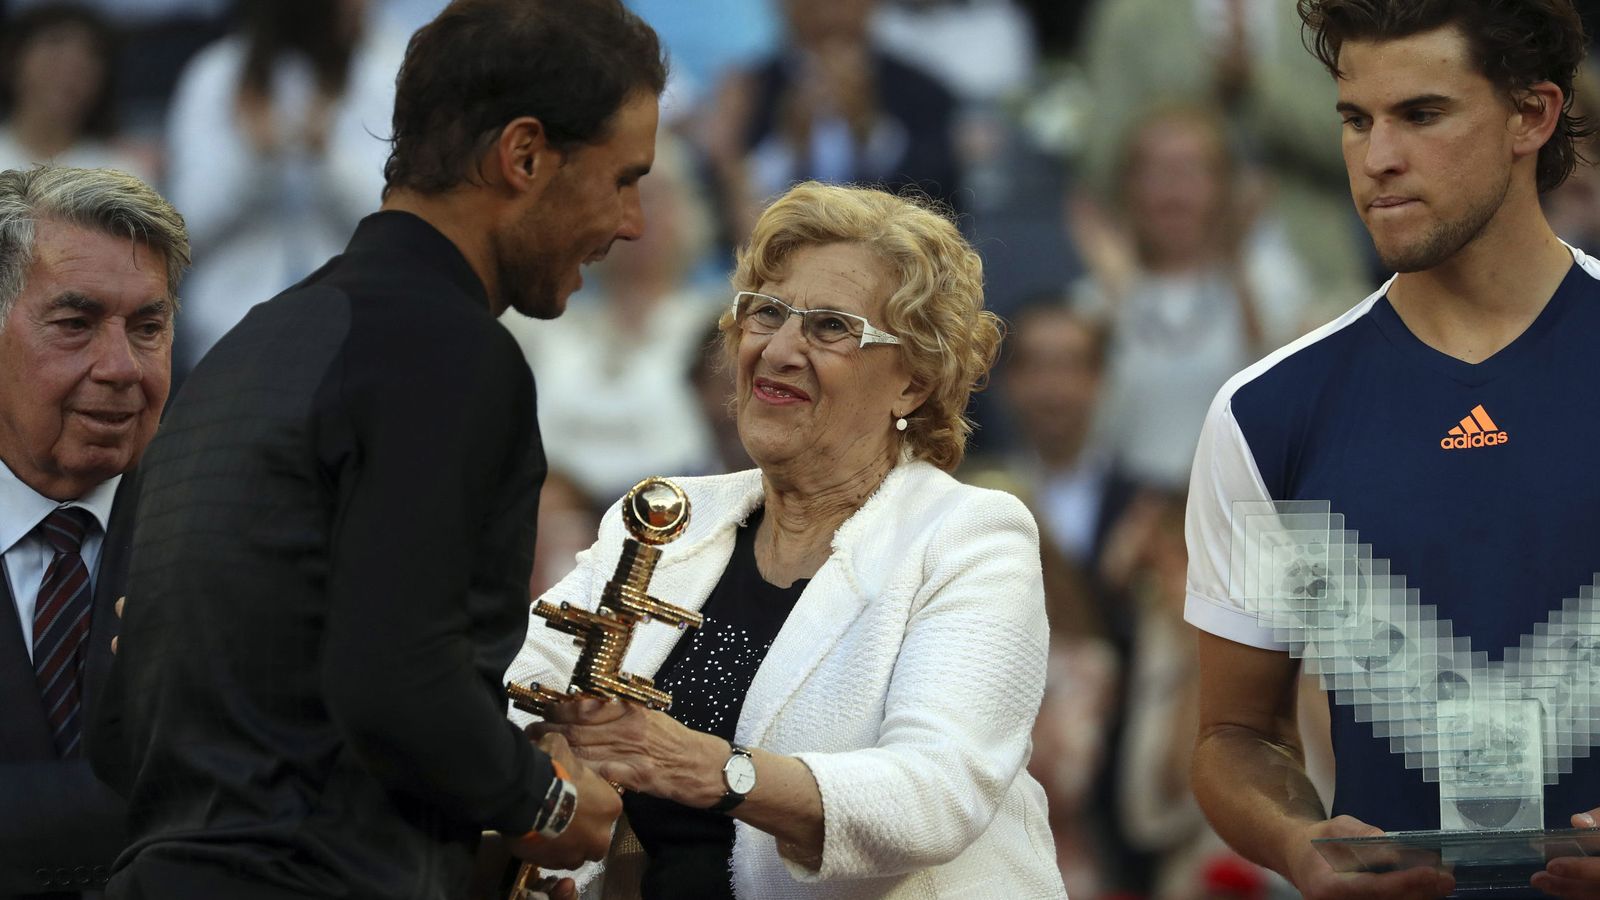 Foto: La alcaldesa de Madrid, Manuela Carmena, entrega el trofeo del Open de Tenis a Rafa Nadal. (EFE)